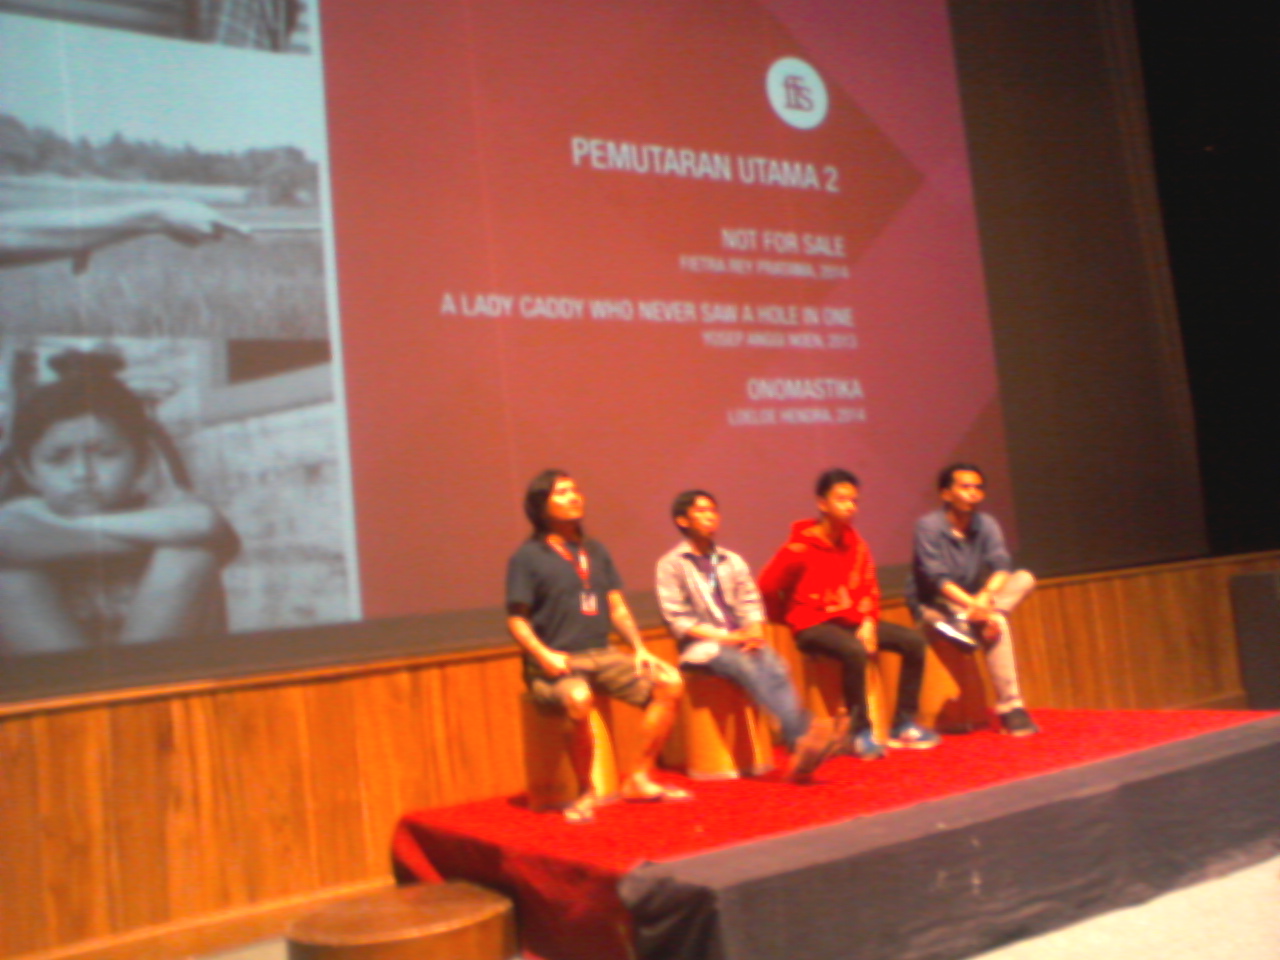 Dari kanan: Yosep Anggi Noen, Fietra Rey Pratama, Loeloe Hendra, dan seorang moderator dari pihak kurator.